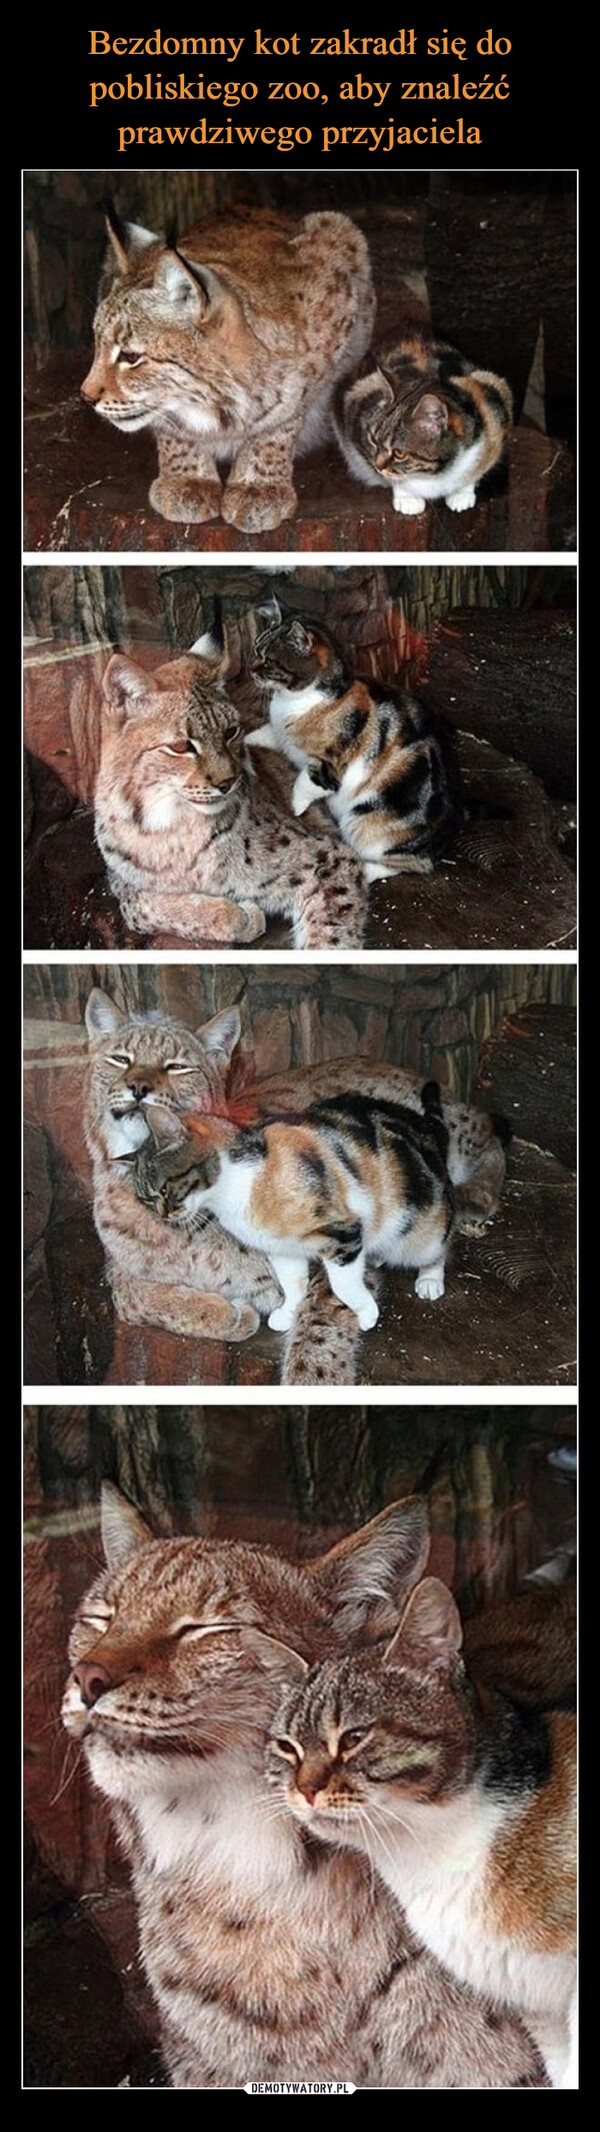 Bezdomny kot zakradł się do pobliskiego zoo, aby znaleźć prawdziwego przyjaciela